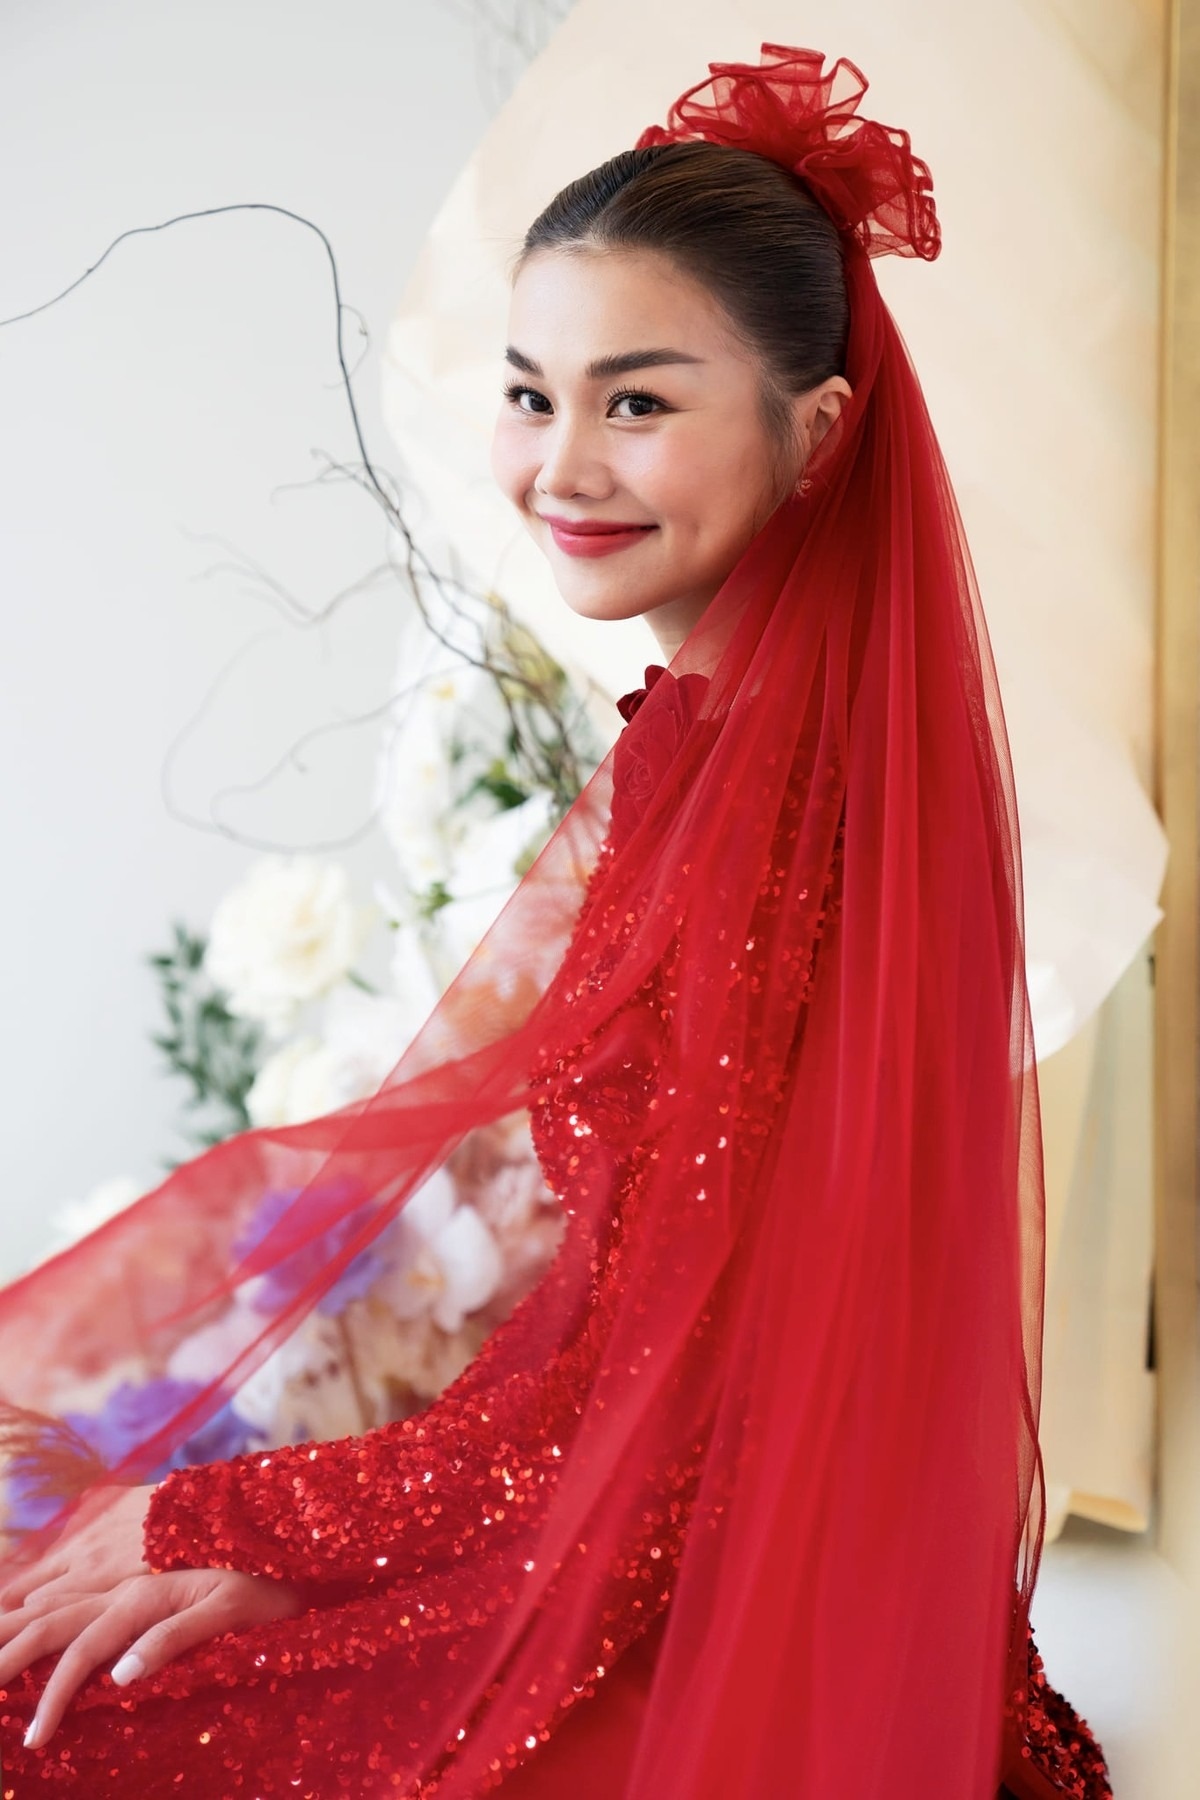 Chuyện showbiz: Hình ảnh đầu tiên ở đám cưới siêu mẫu Thanh Hằng